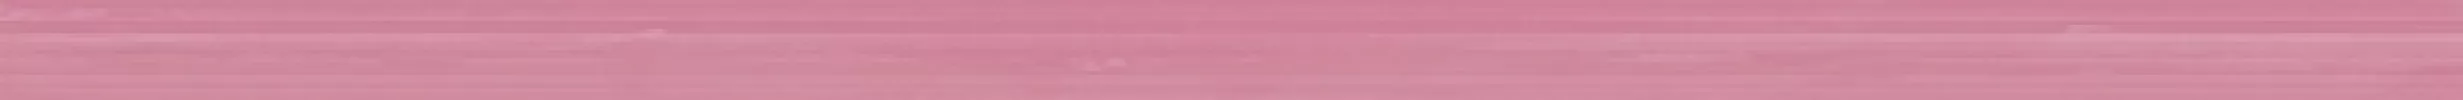 Плитка настенная Ceramica Classic 50x2 бордюр Mono lilac Flamingo матовая глазурованная